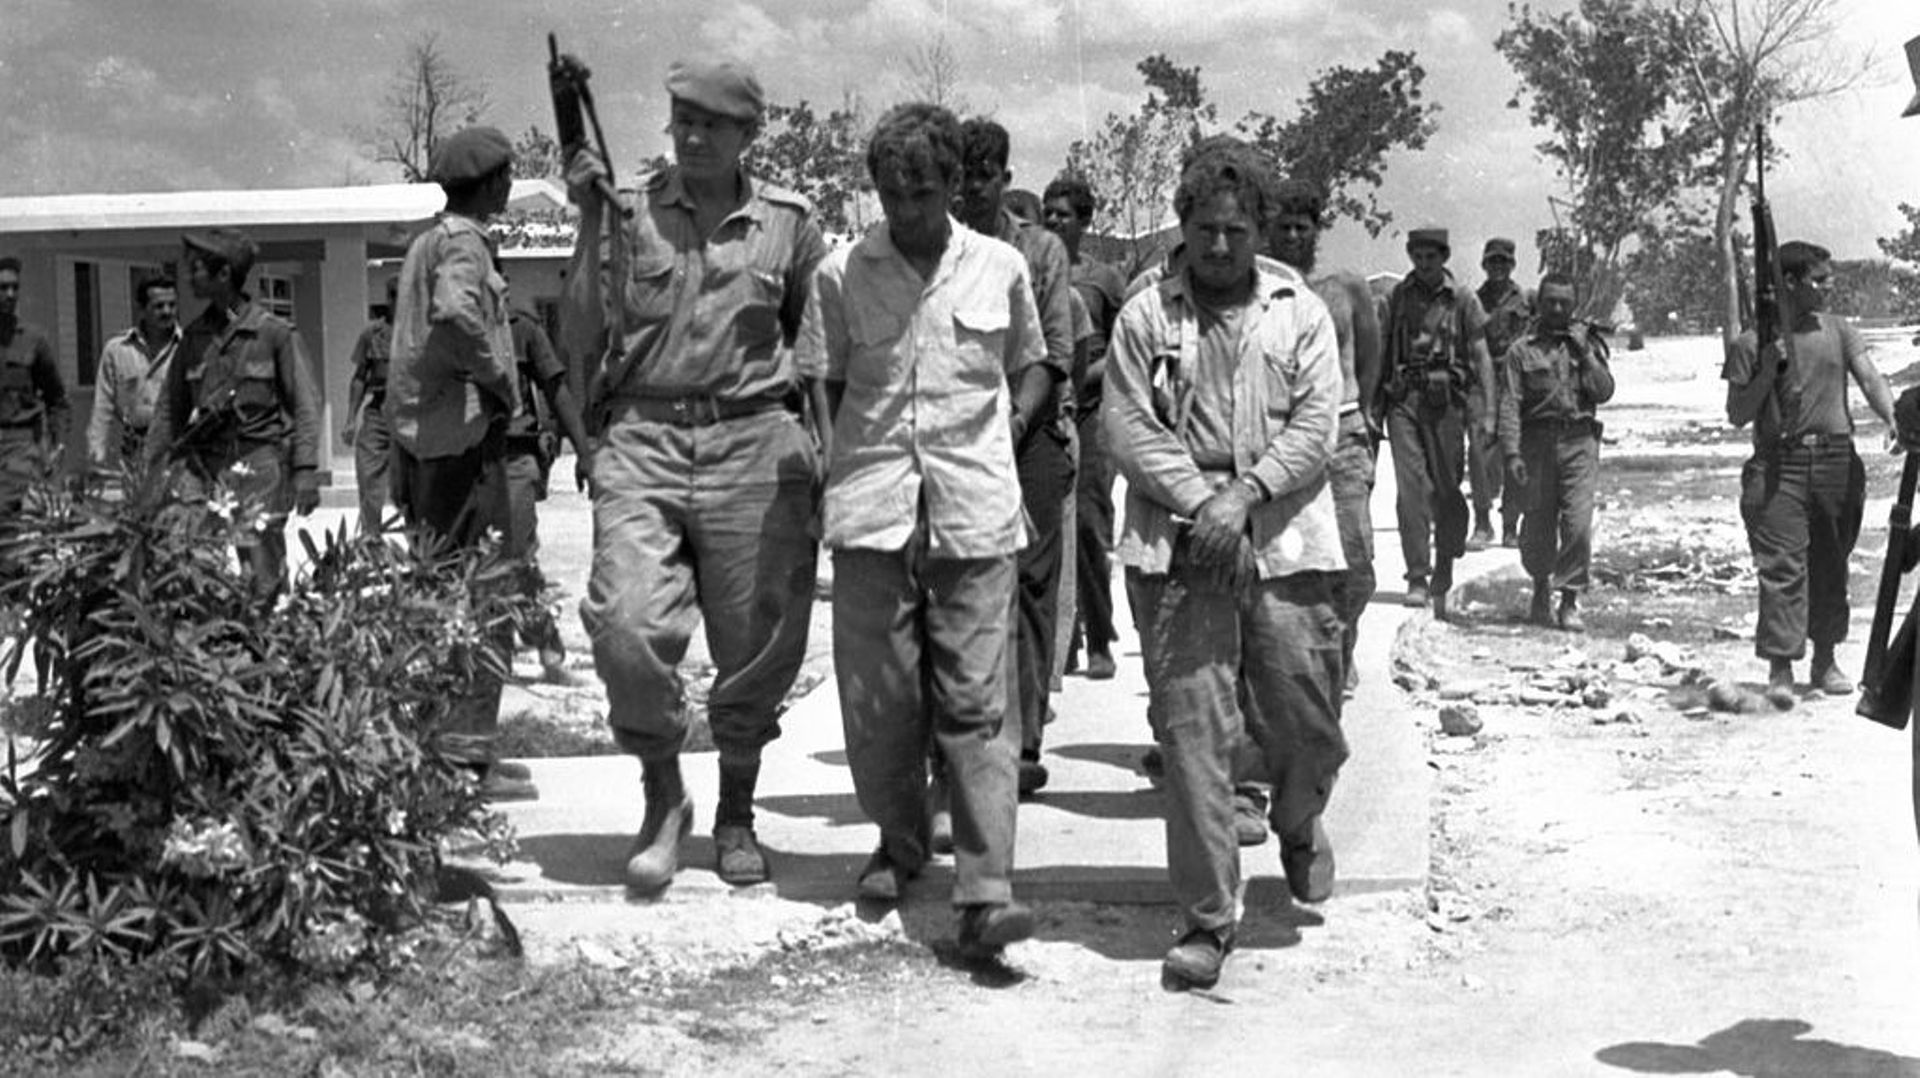 Plus de 1200 'mercenaires' cubains, opposés au régime de Fidel Castro, sont faits prisonniers par l’armée cubaine.